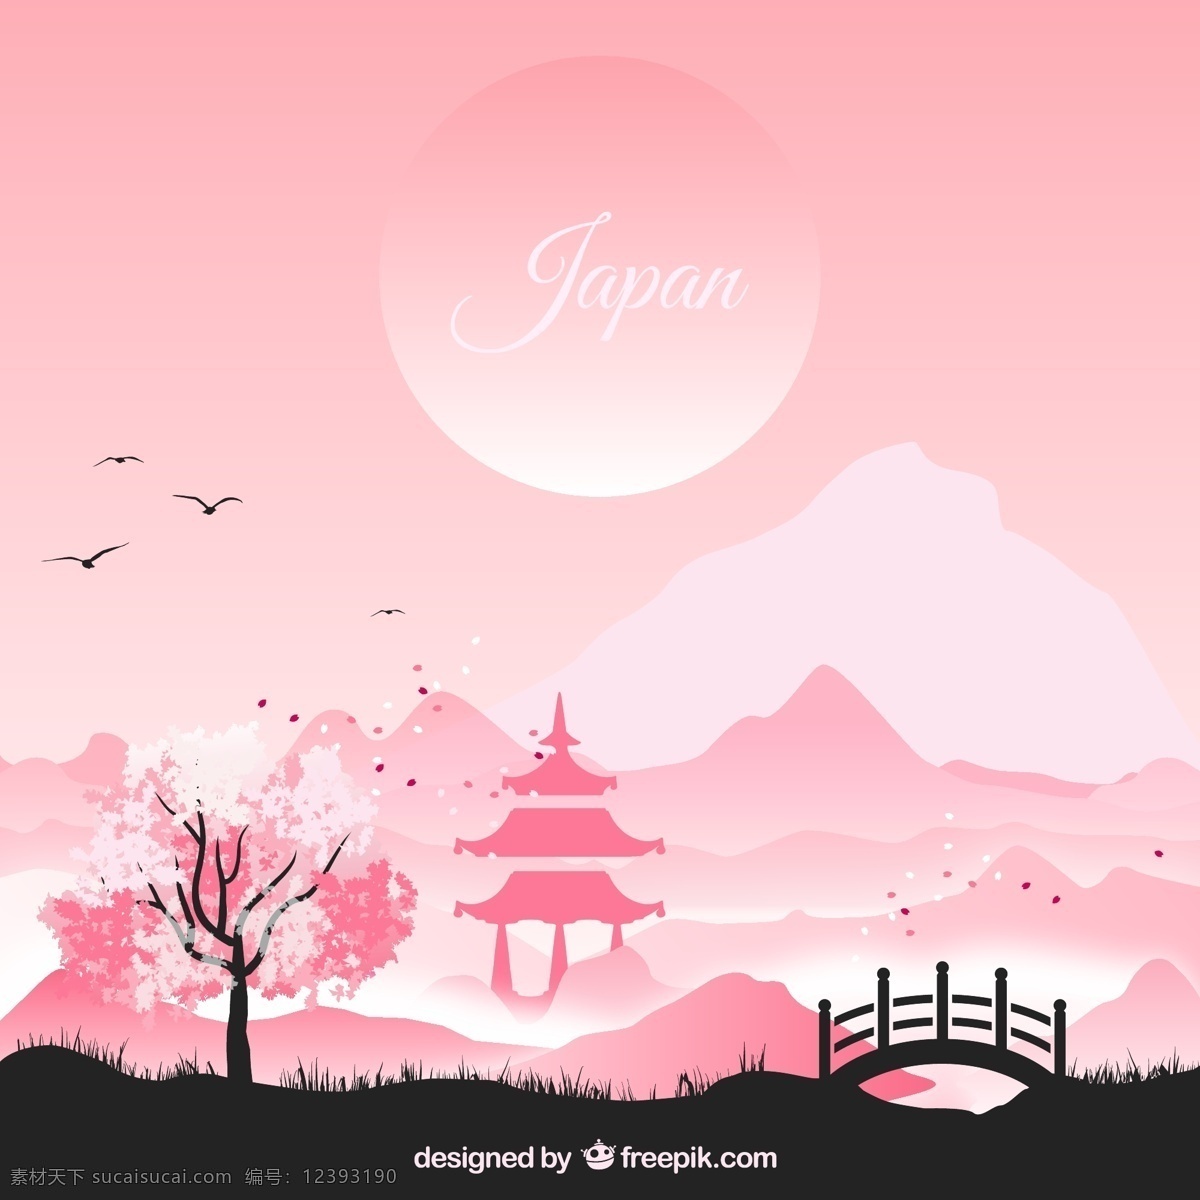 日式 风格 风景 插画 太阳 粉色 鸟 樱花 桥 亭 山 日本 矢量图 ai格式